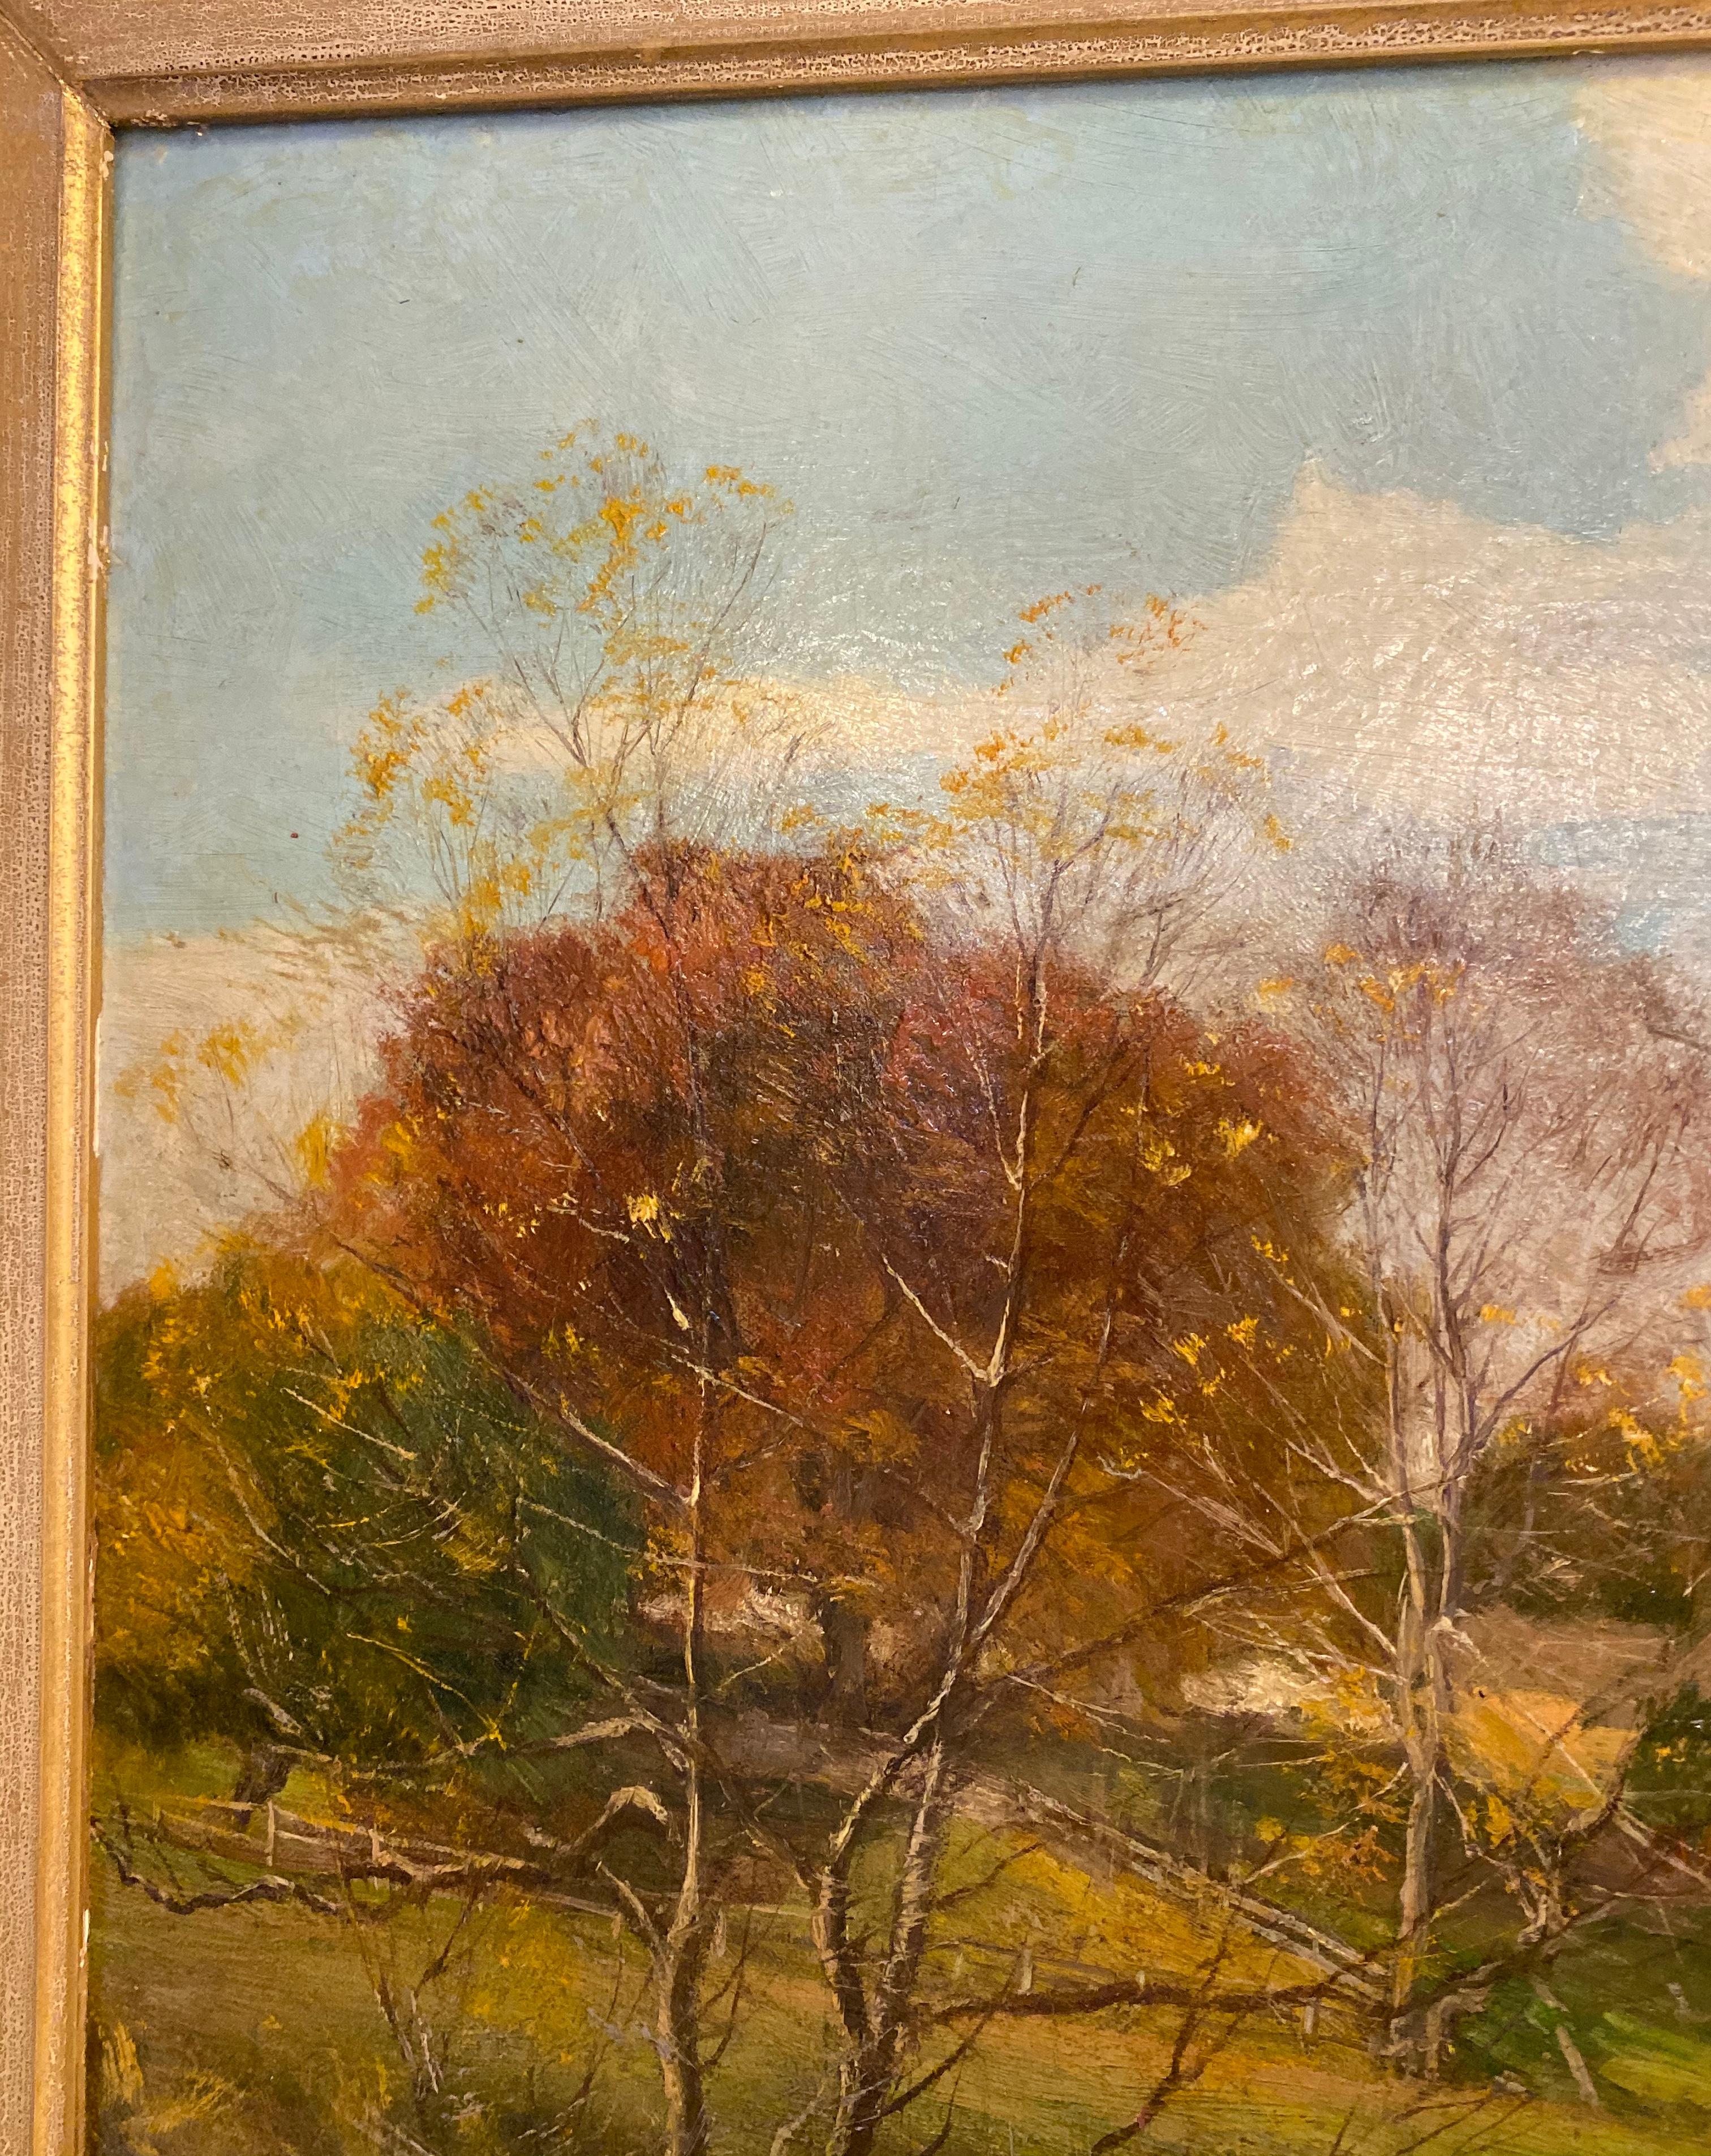 American Olive Parker Black Signed Oil on Canvas Autumn Landscape Giltwood Gold Frame For Sale